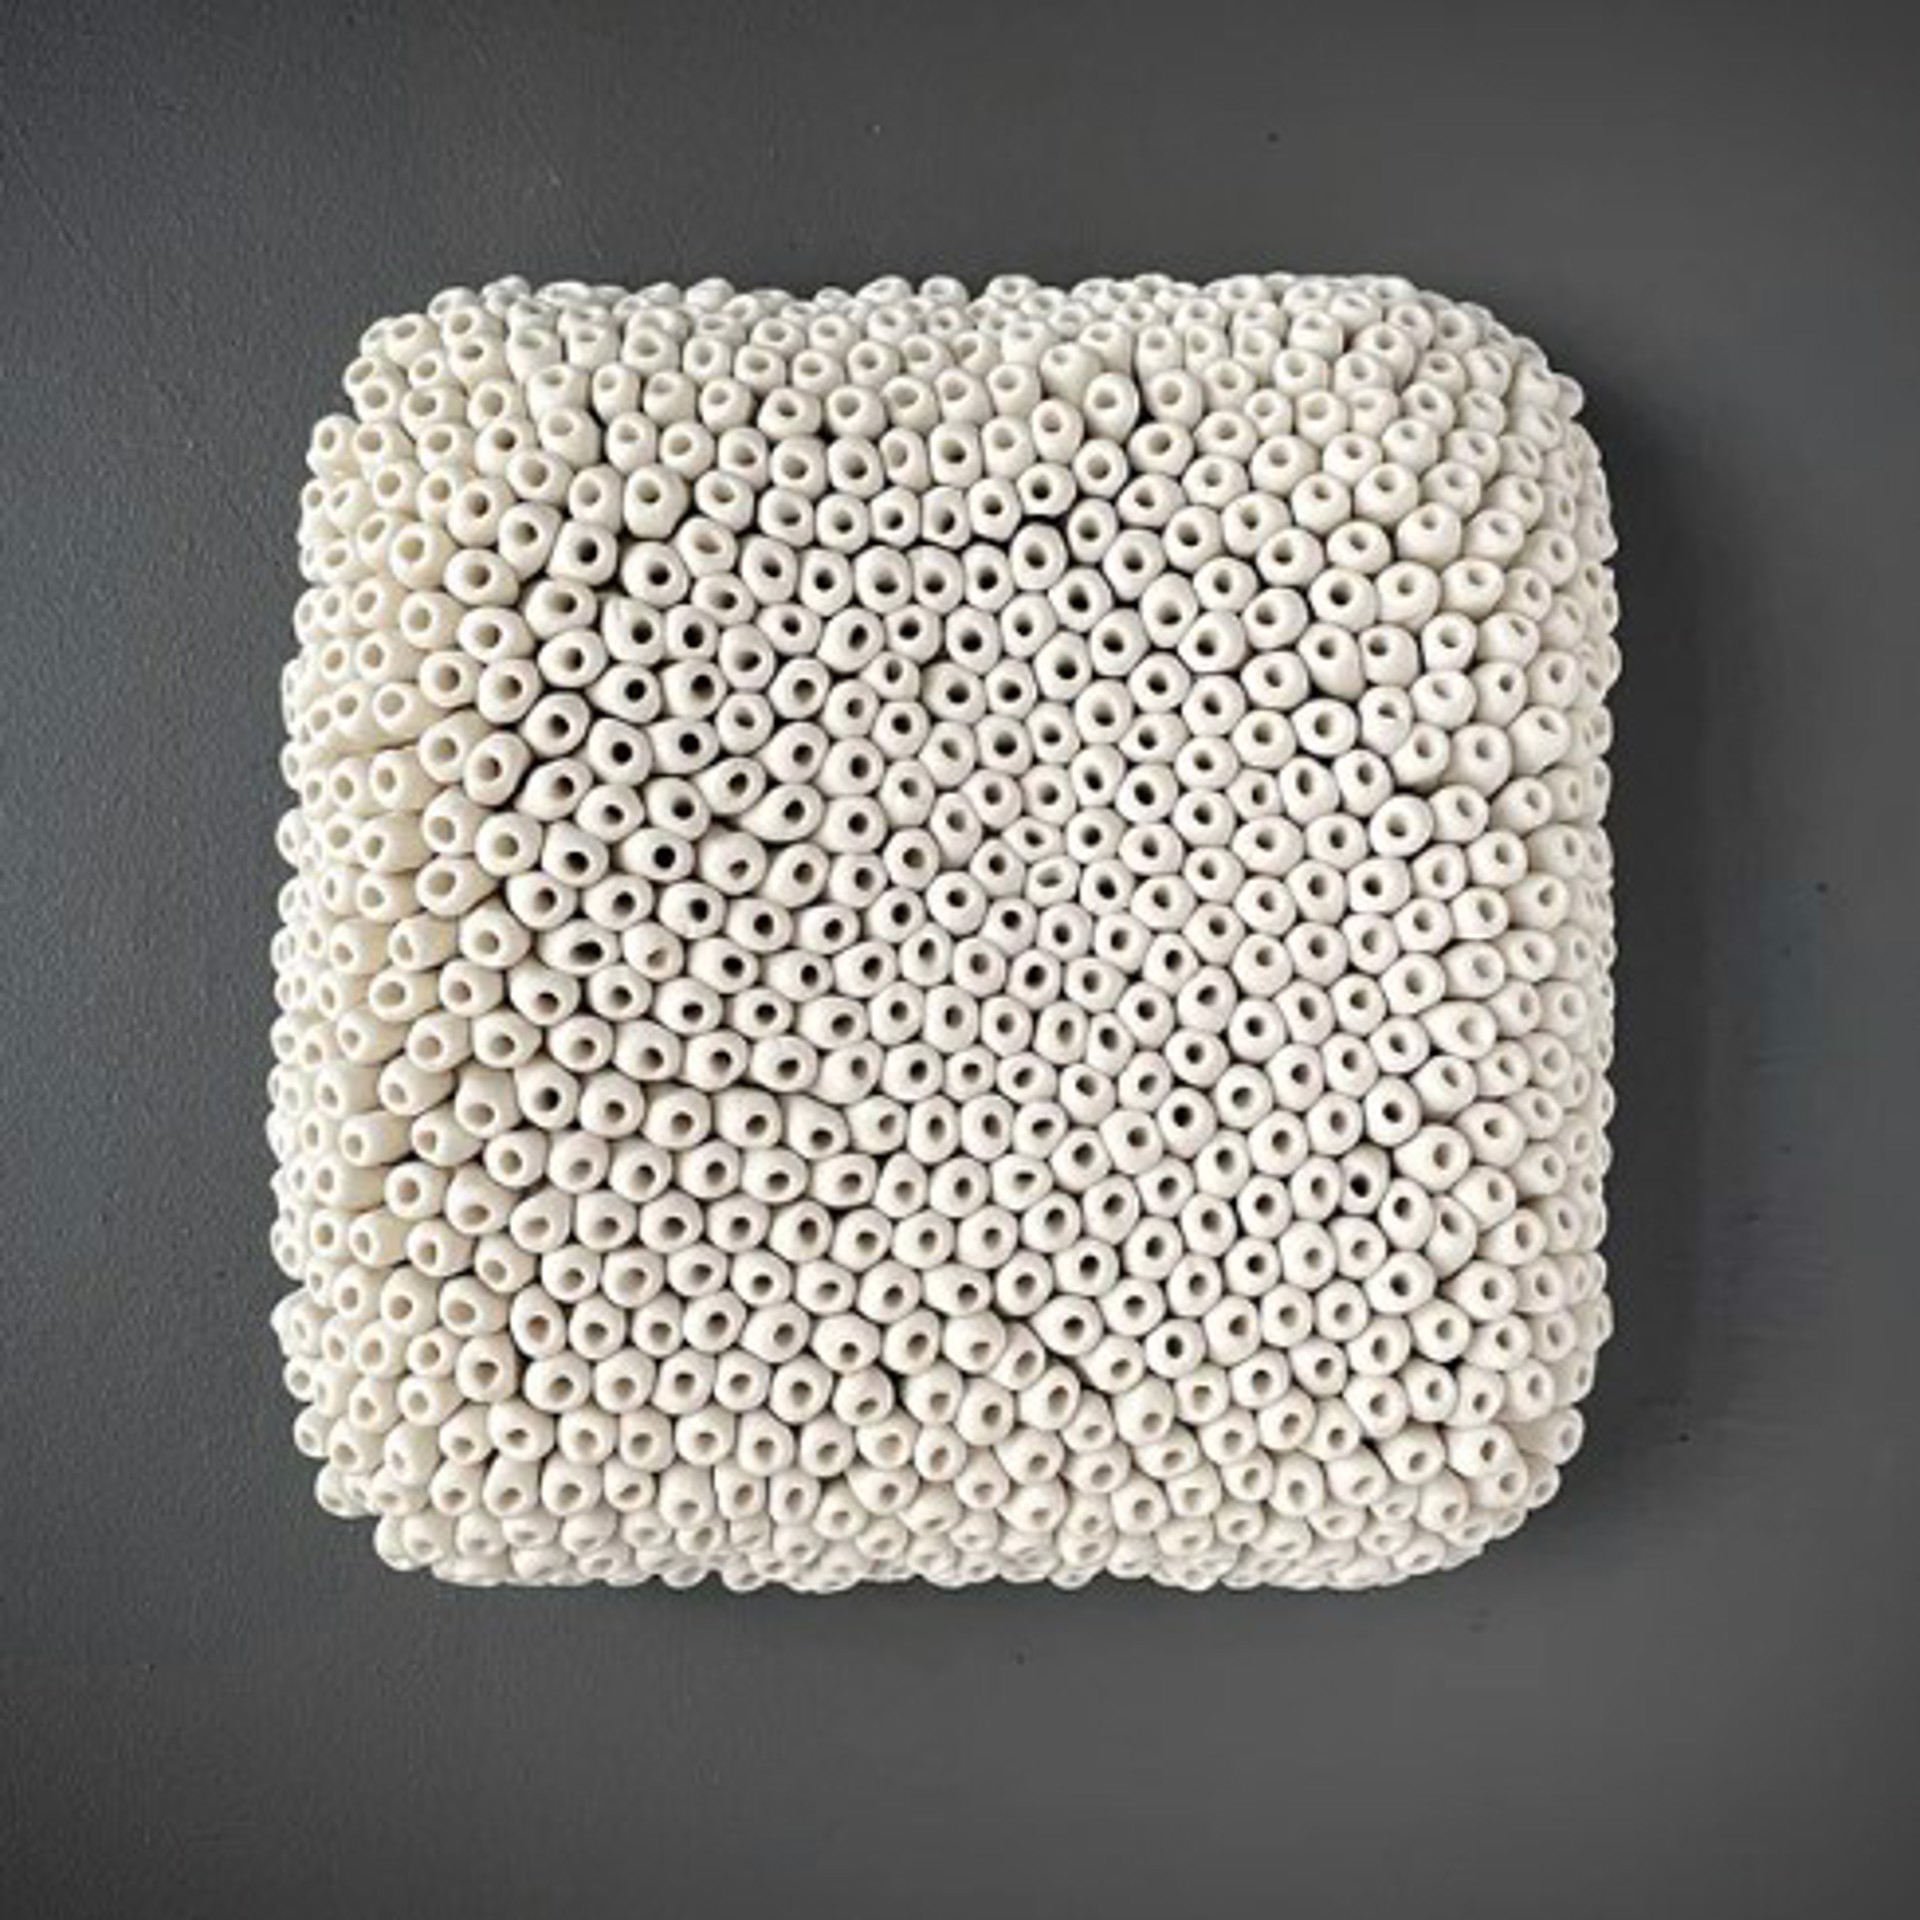 Lichen by Heather Knight